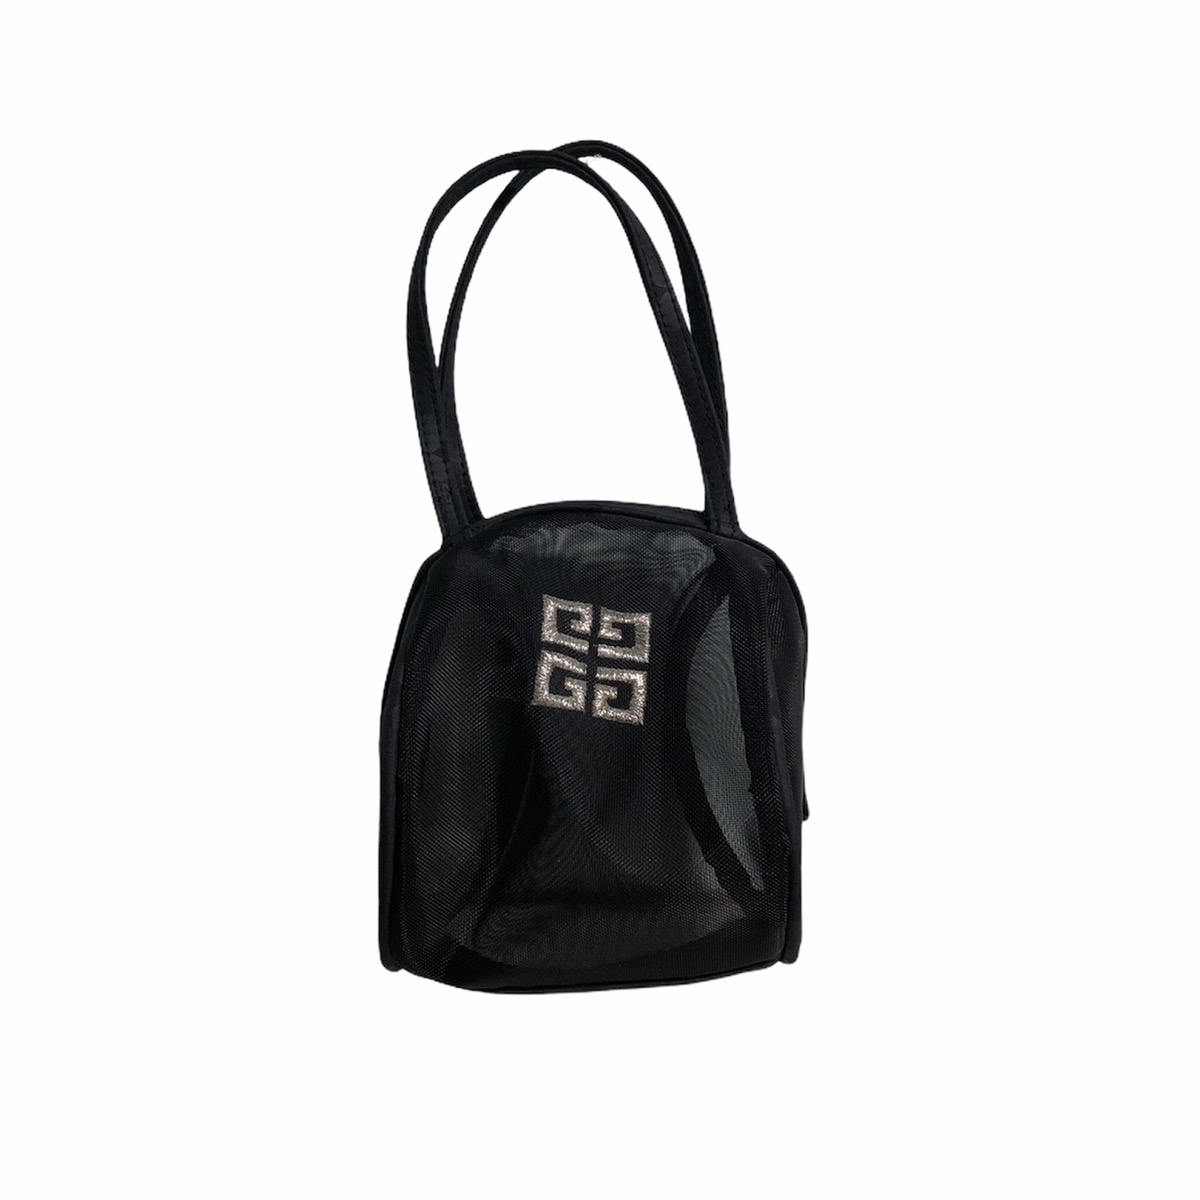 Givenchy toiletries mini bag - 1